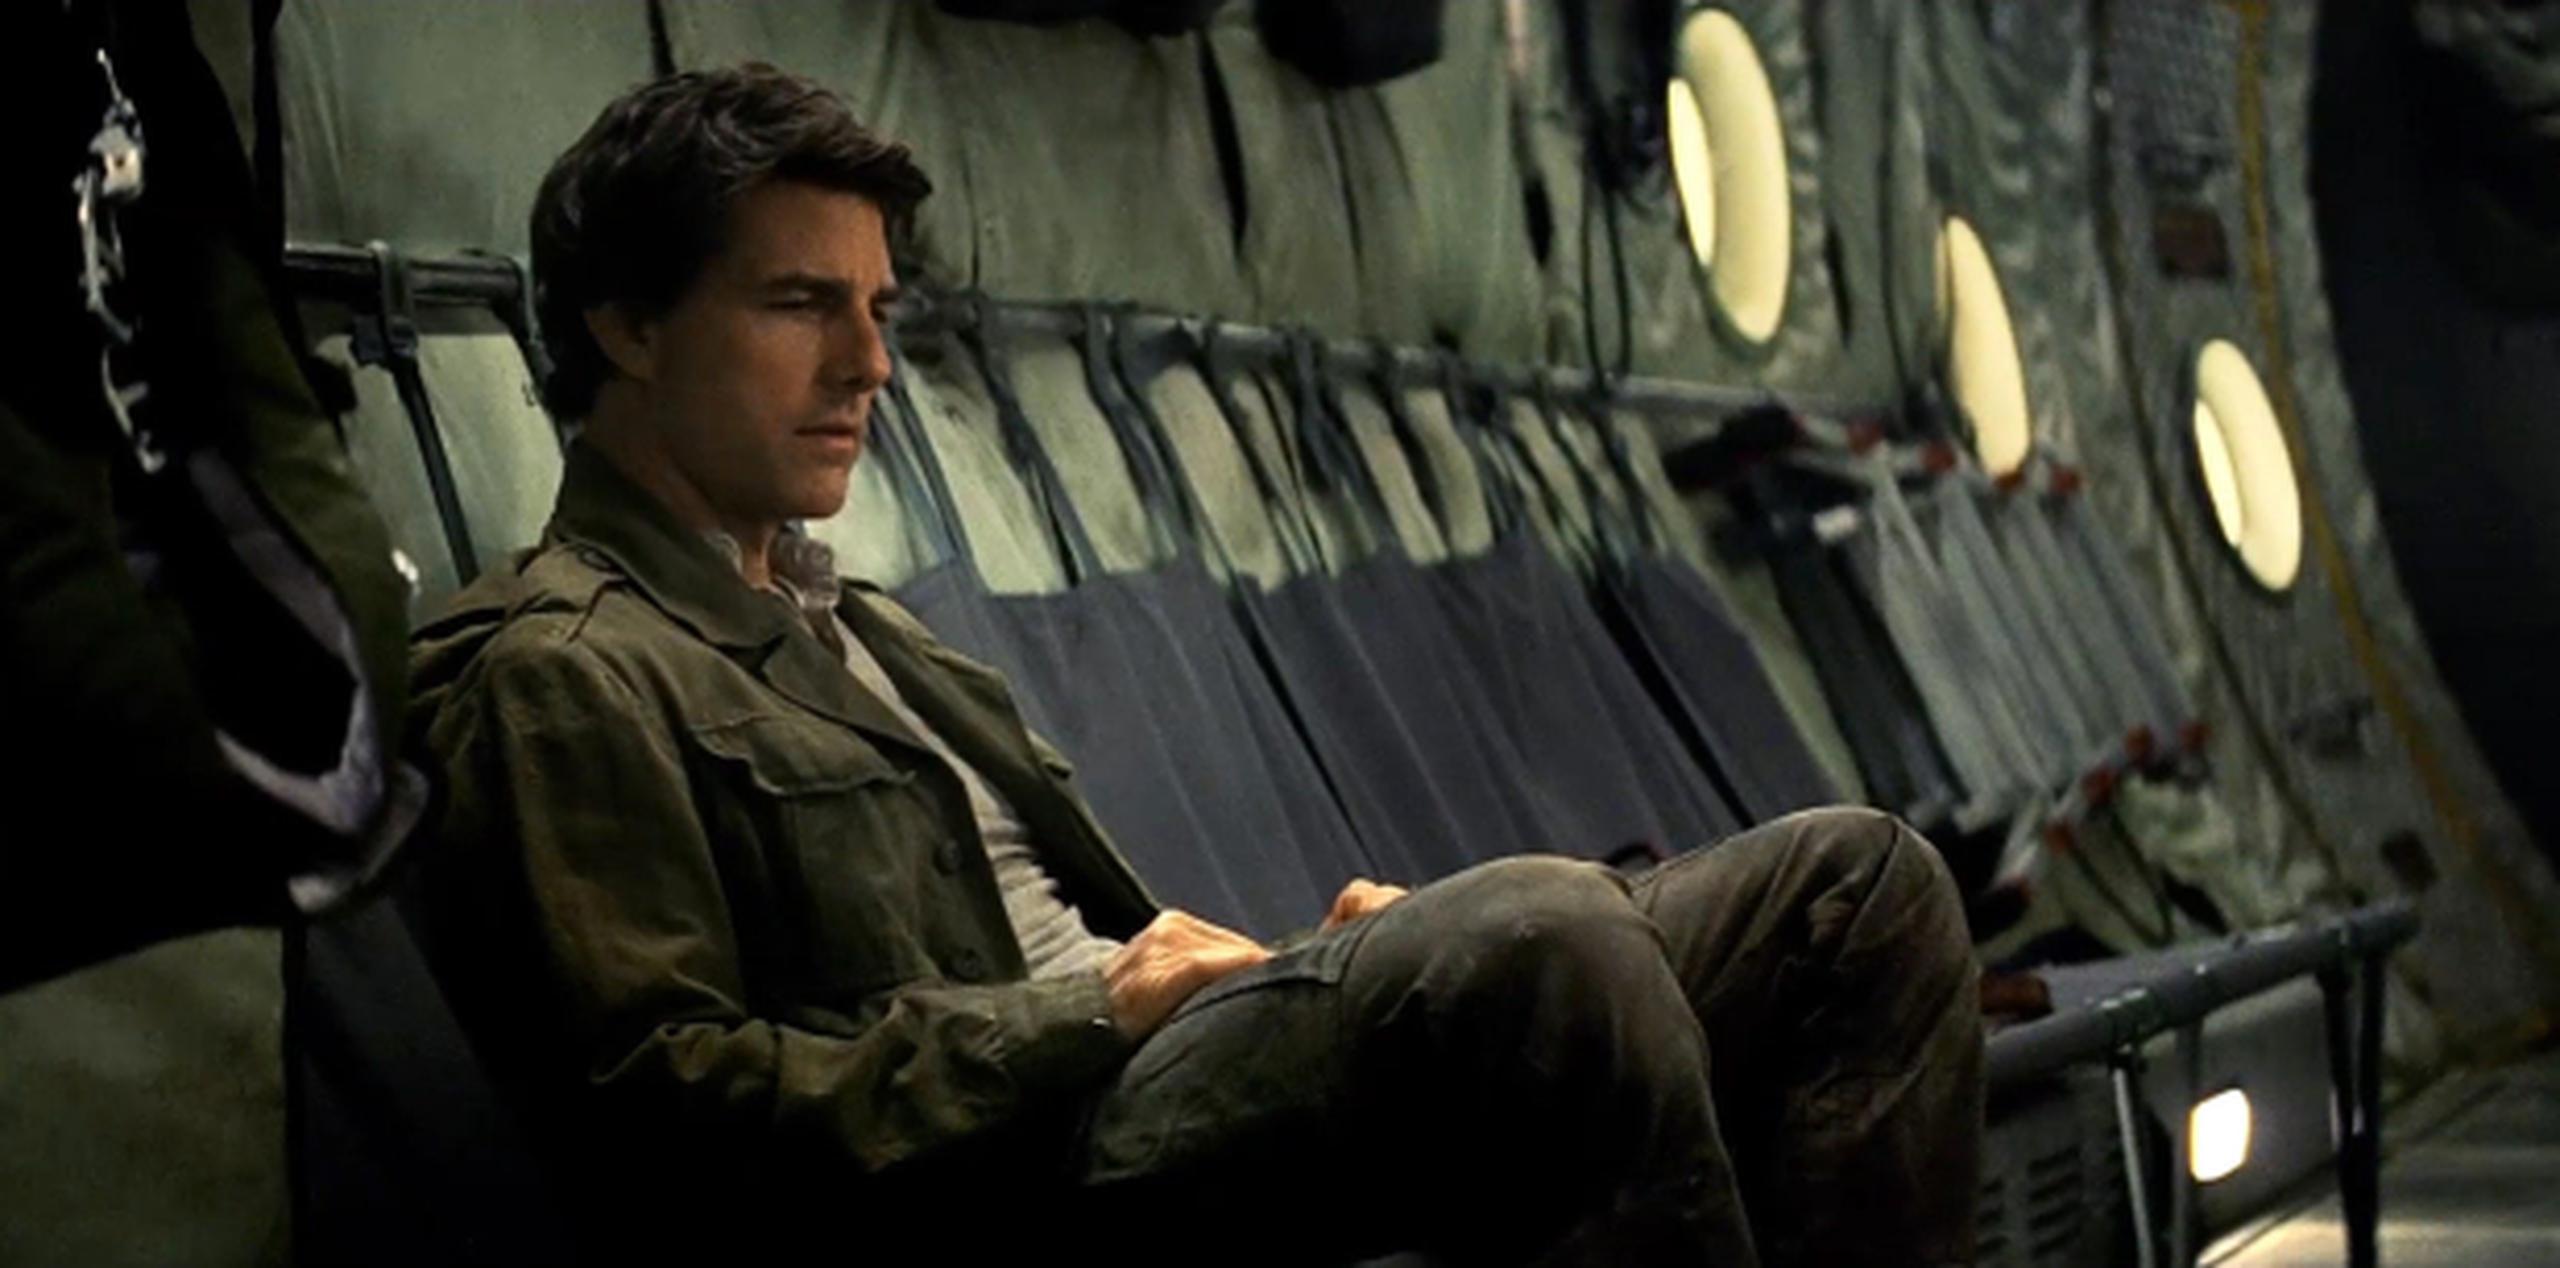 La propuesta de Tom Cruise para revivir la franquicia "The Mummy" le valió el premio al peor actor. (Archivo)